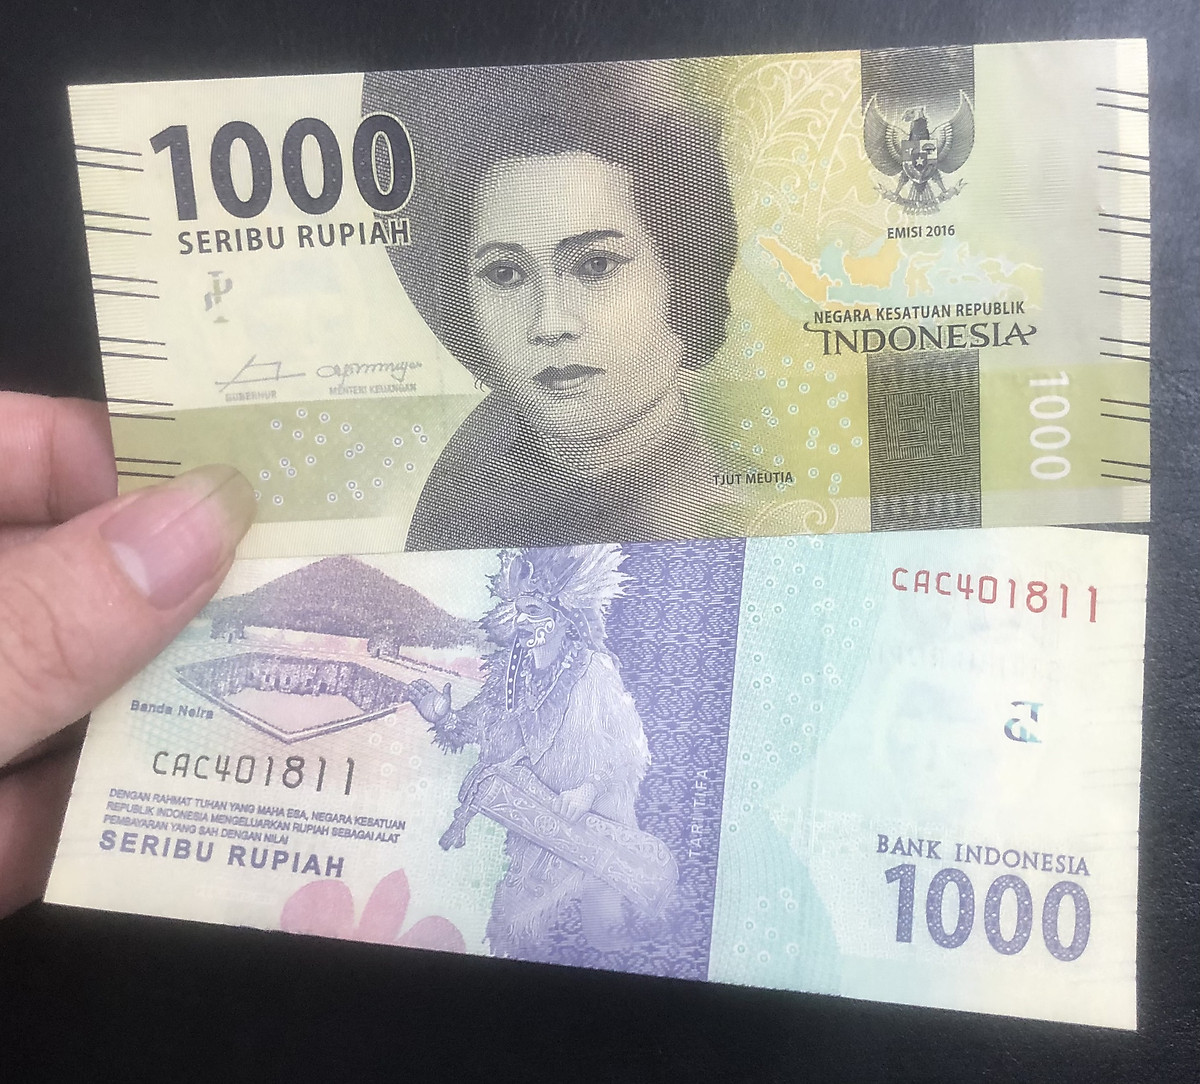 Tiền Indonesia 1000 rupiah mới cứng hình ảnh người phụ nữ - Tiền mới keng 100% - Tặng túi nilon bảo quản